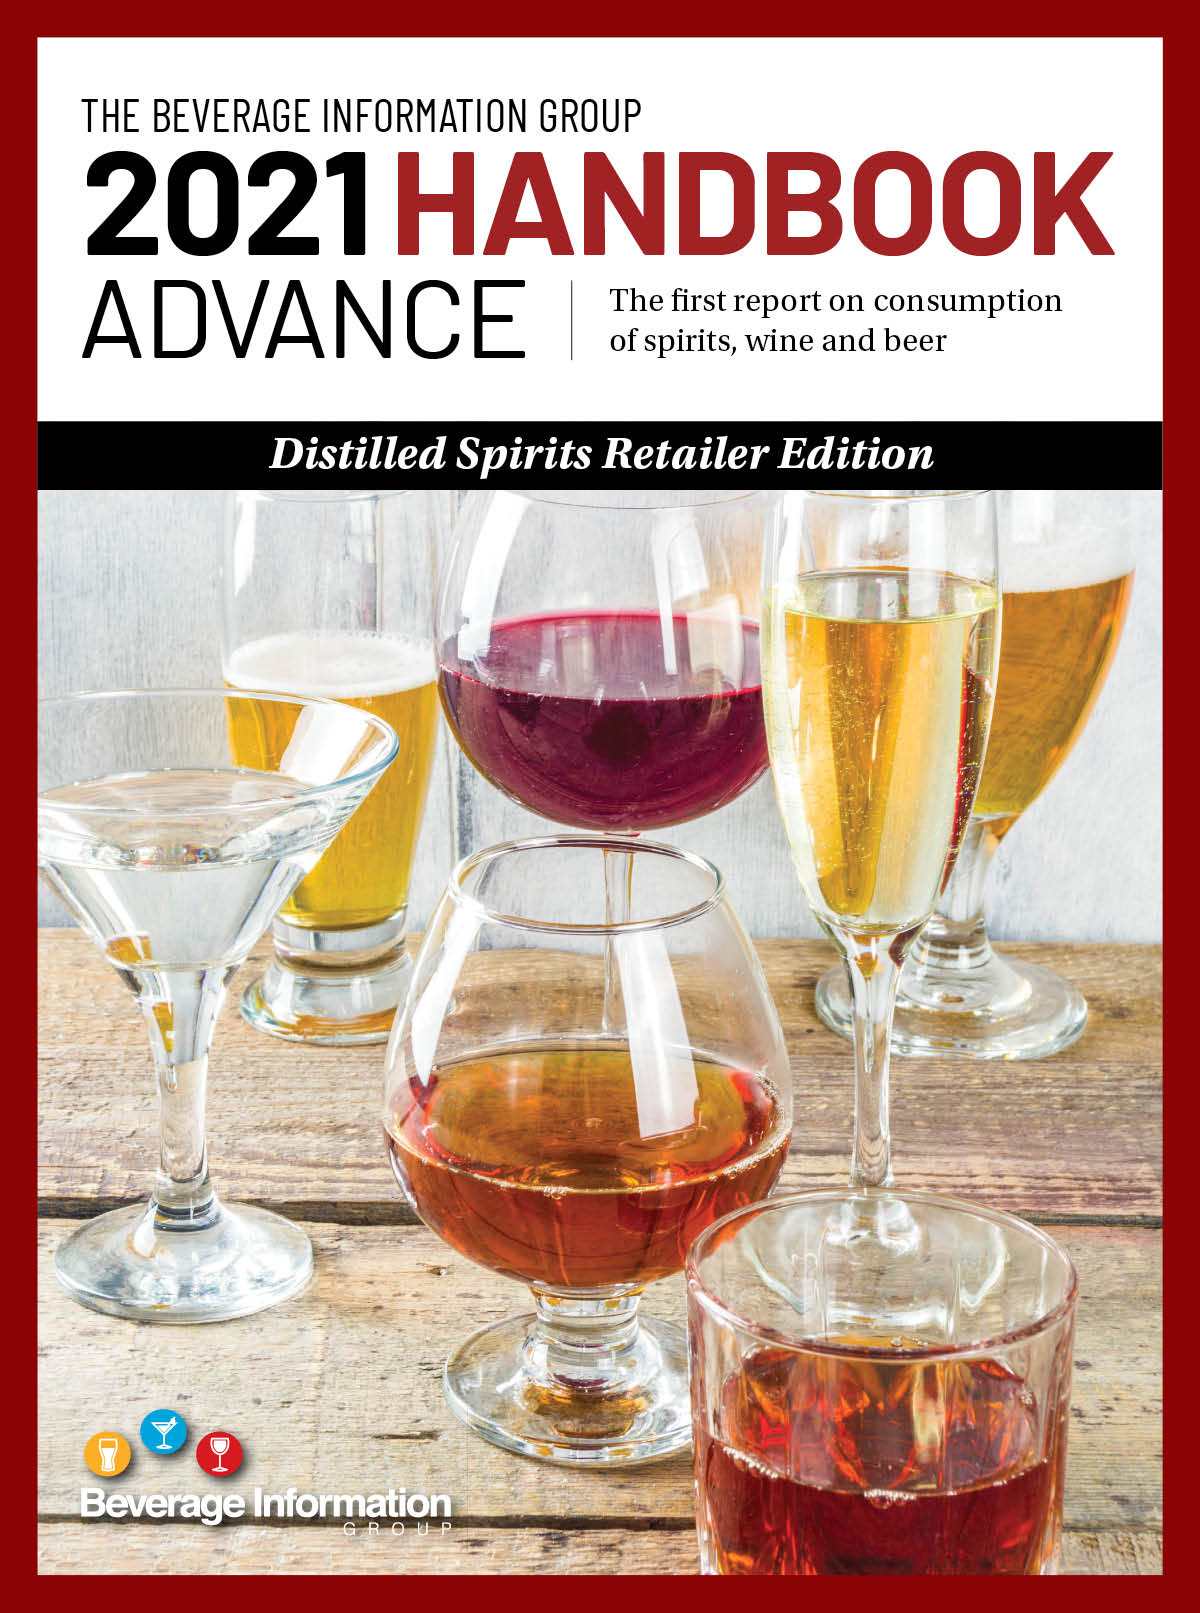 2021 Handbook Advance - Distilled Spirits Retailer Edition